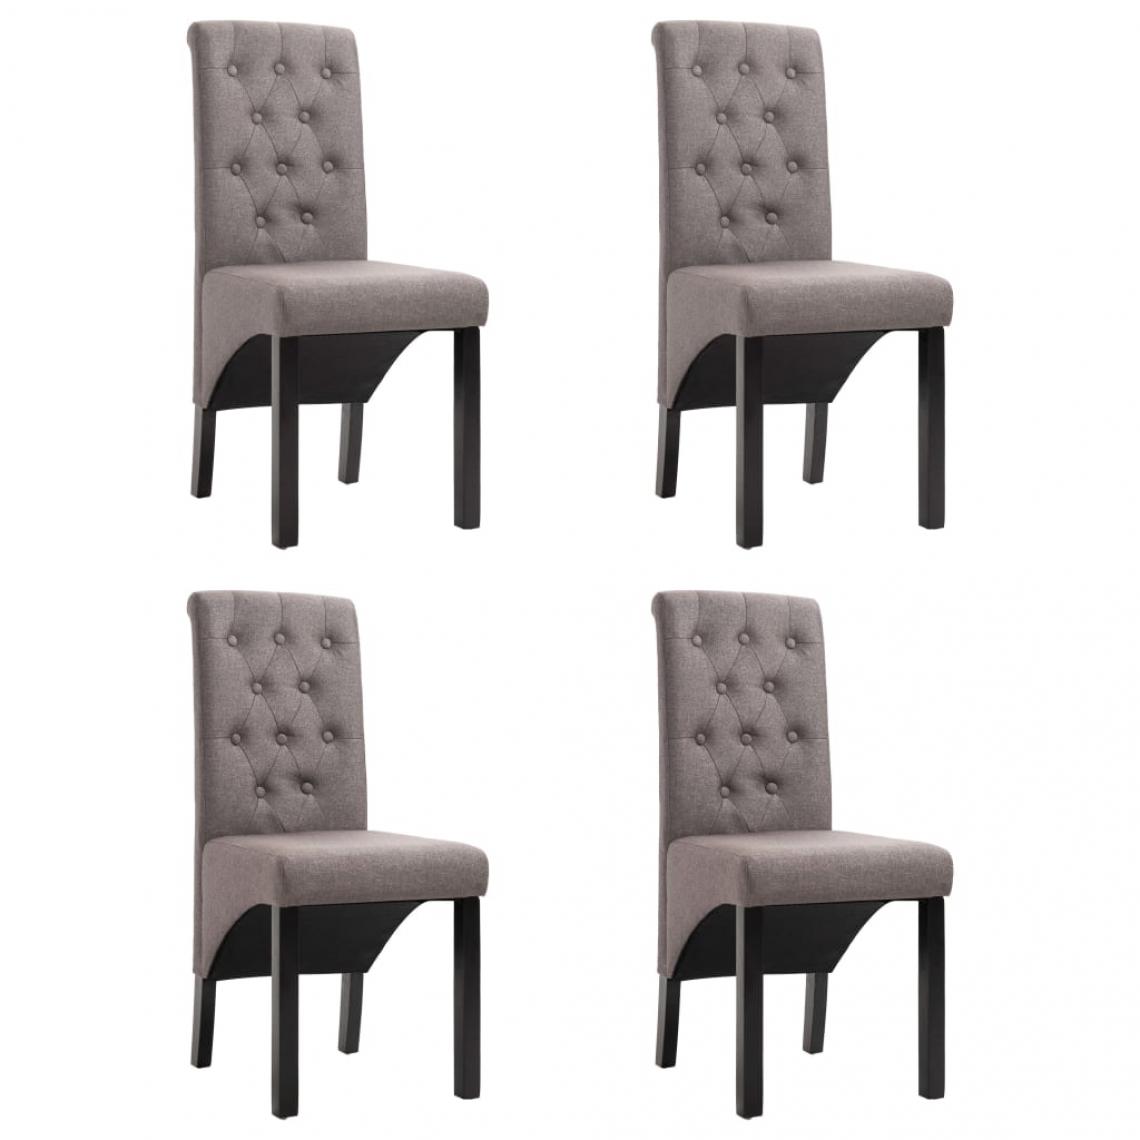 Decoshop26 - Lot de 4 chaises de salle à manger cuisine design moderne tissu taupe CDS021990 - Chaises